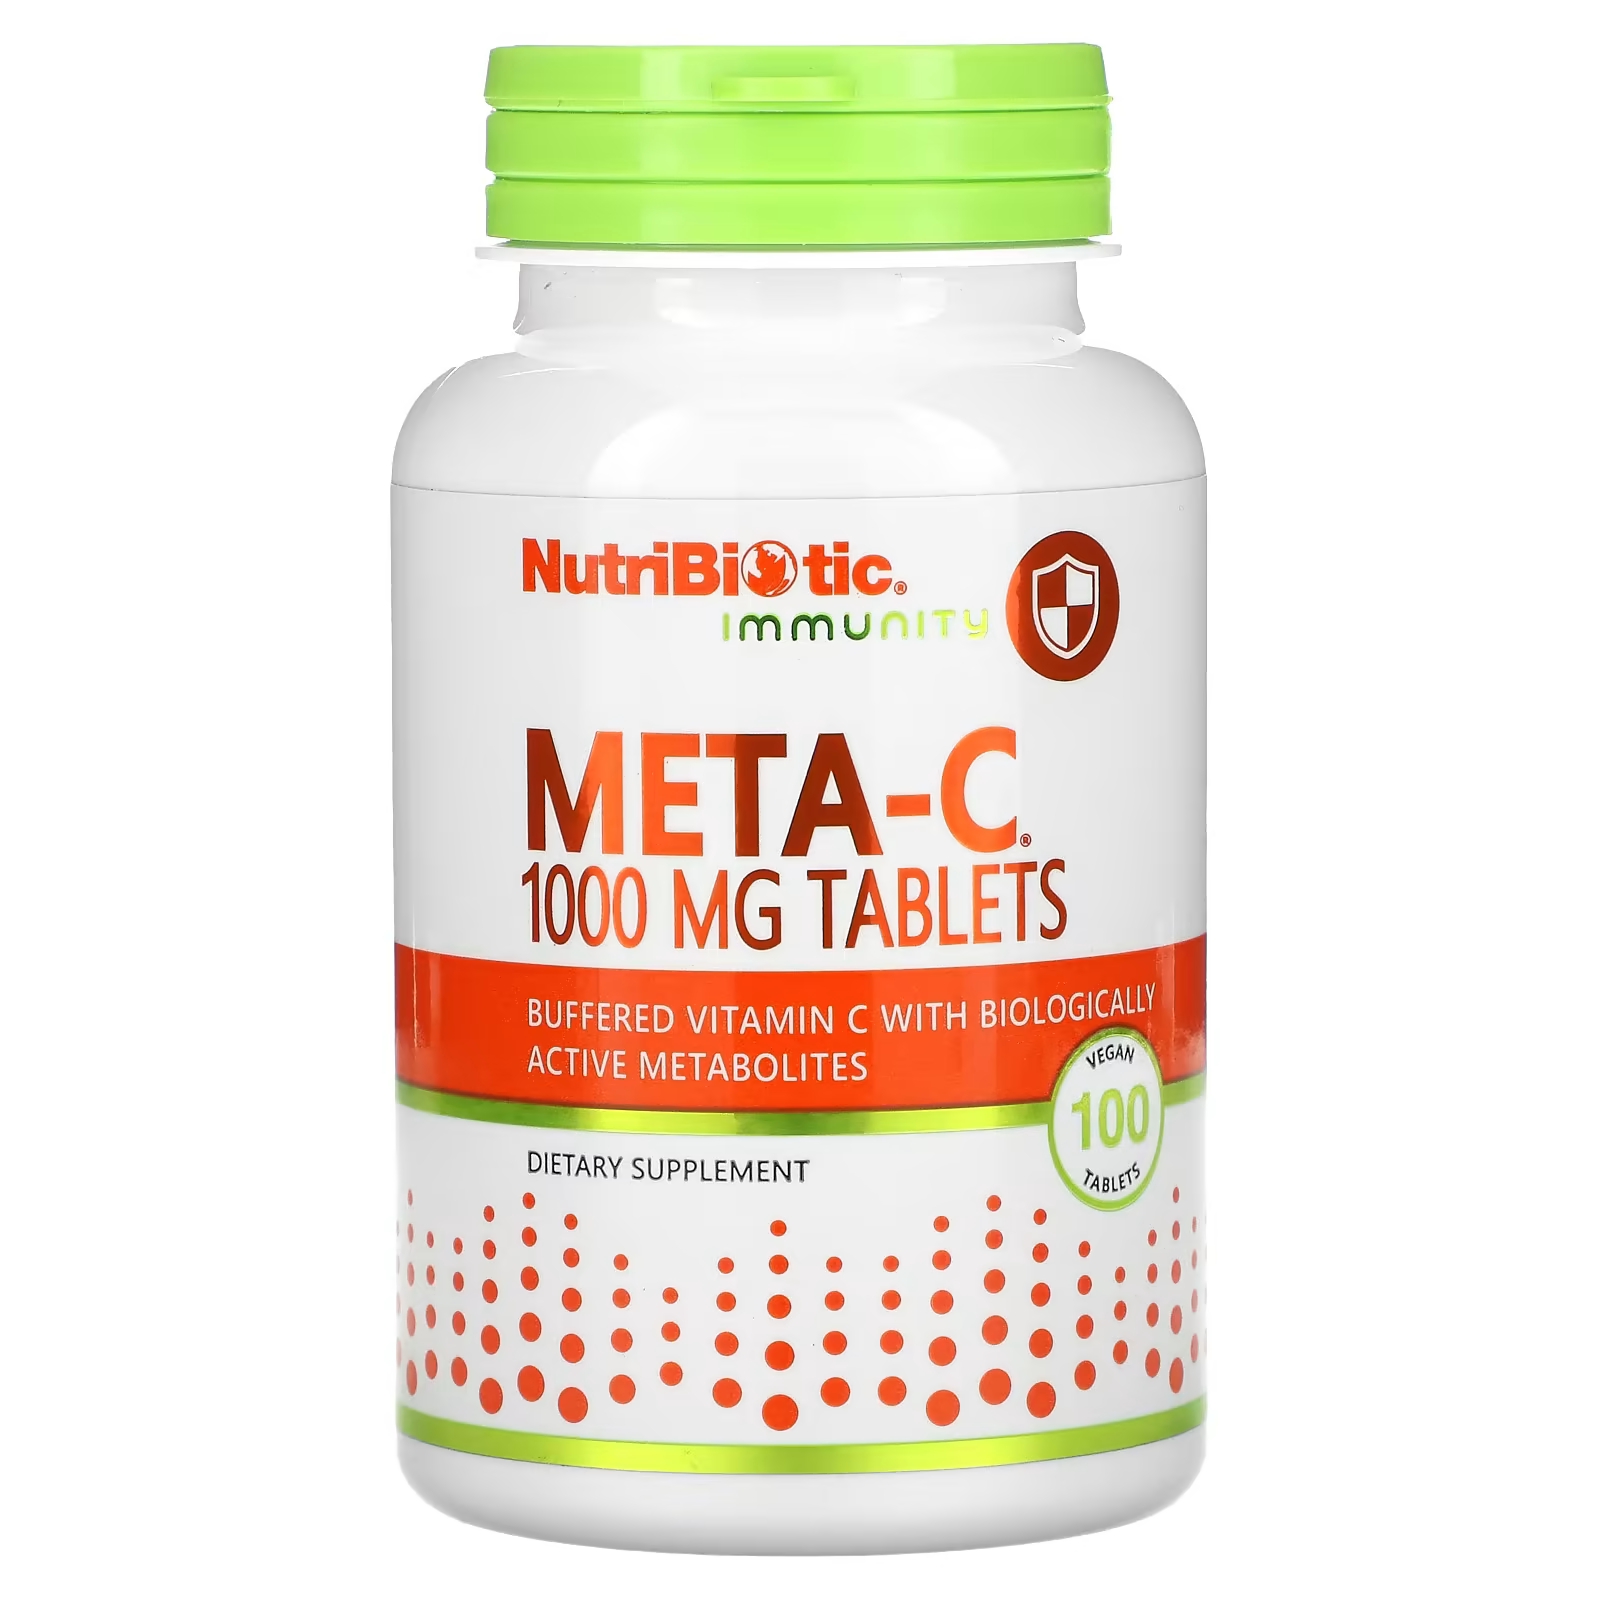 Пищевая добавка NutriBiotic Immunity Meta-C 1000 мг, 100 веганских таблеток цена и фото